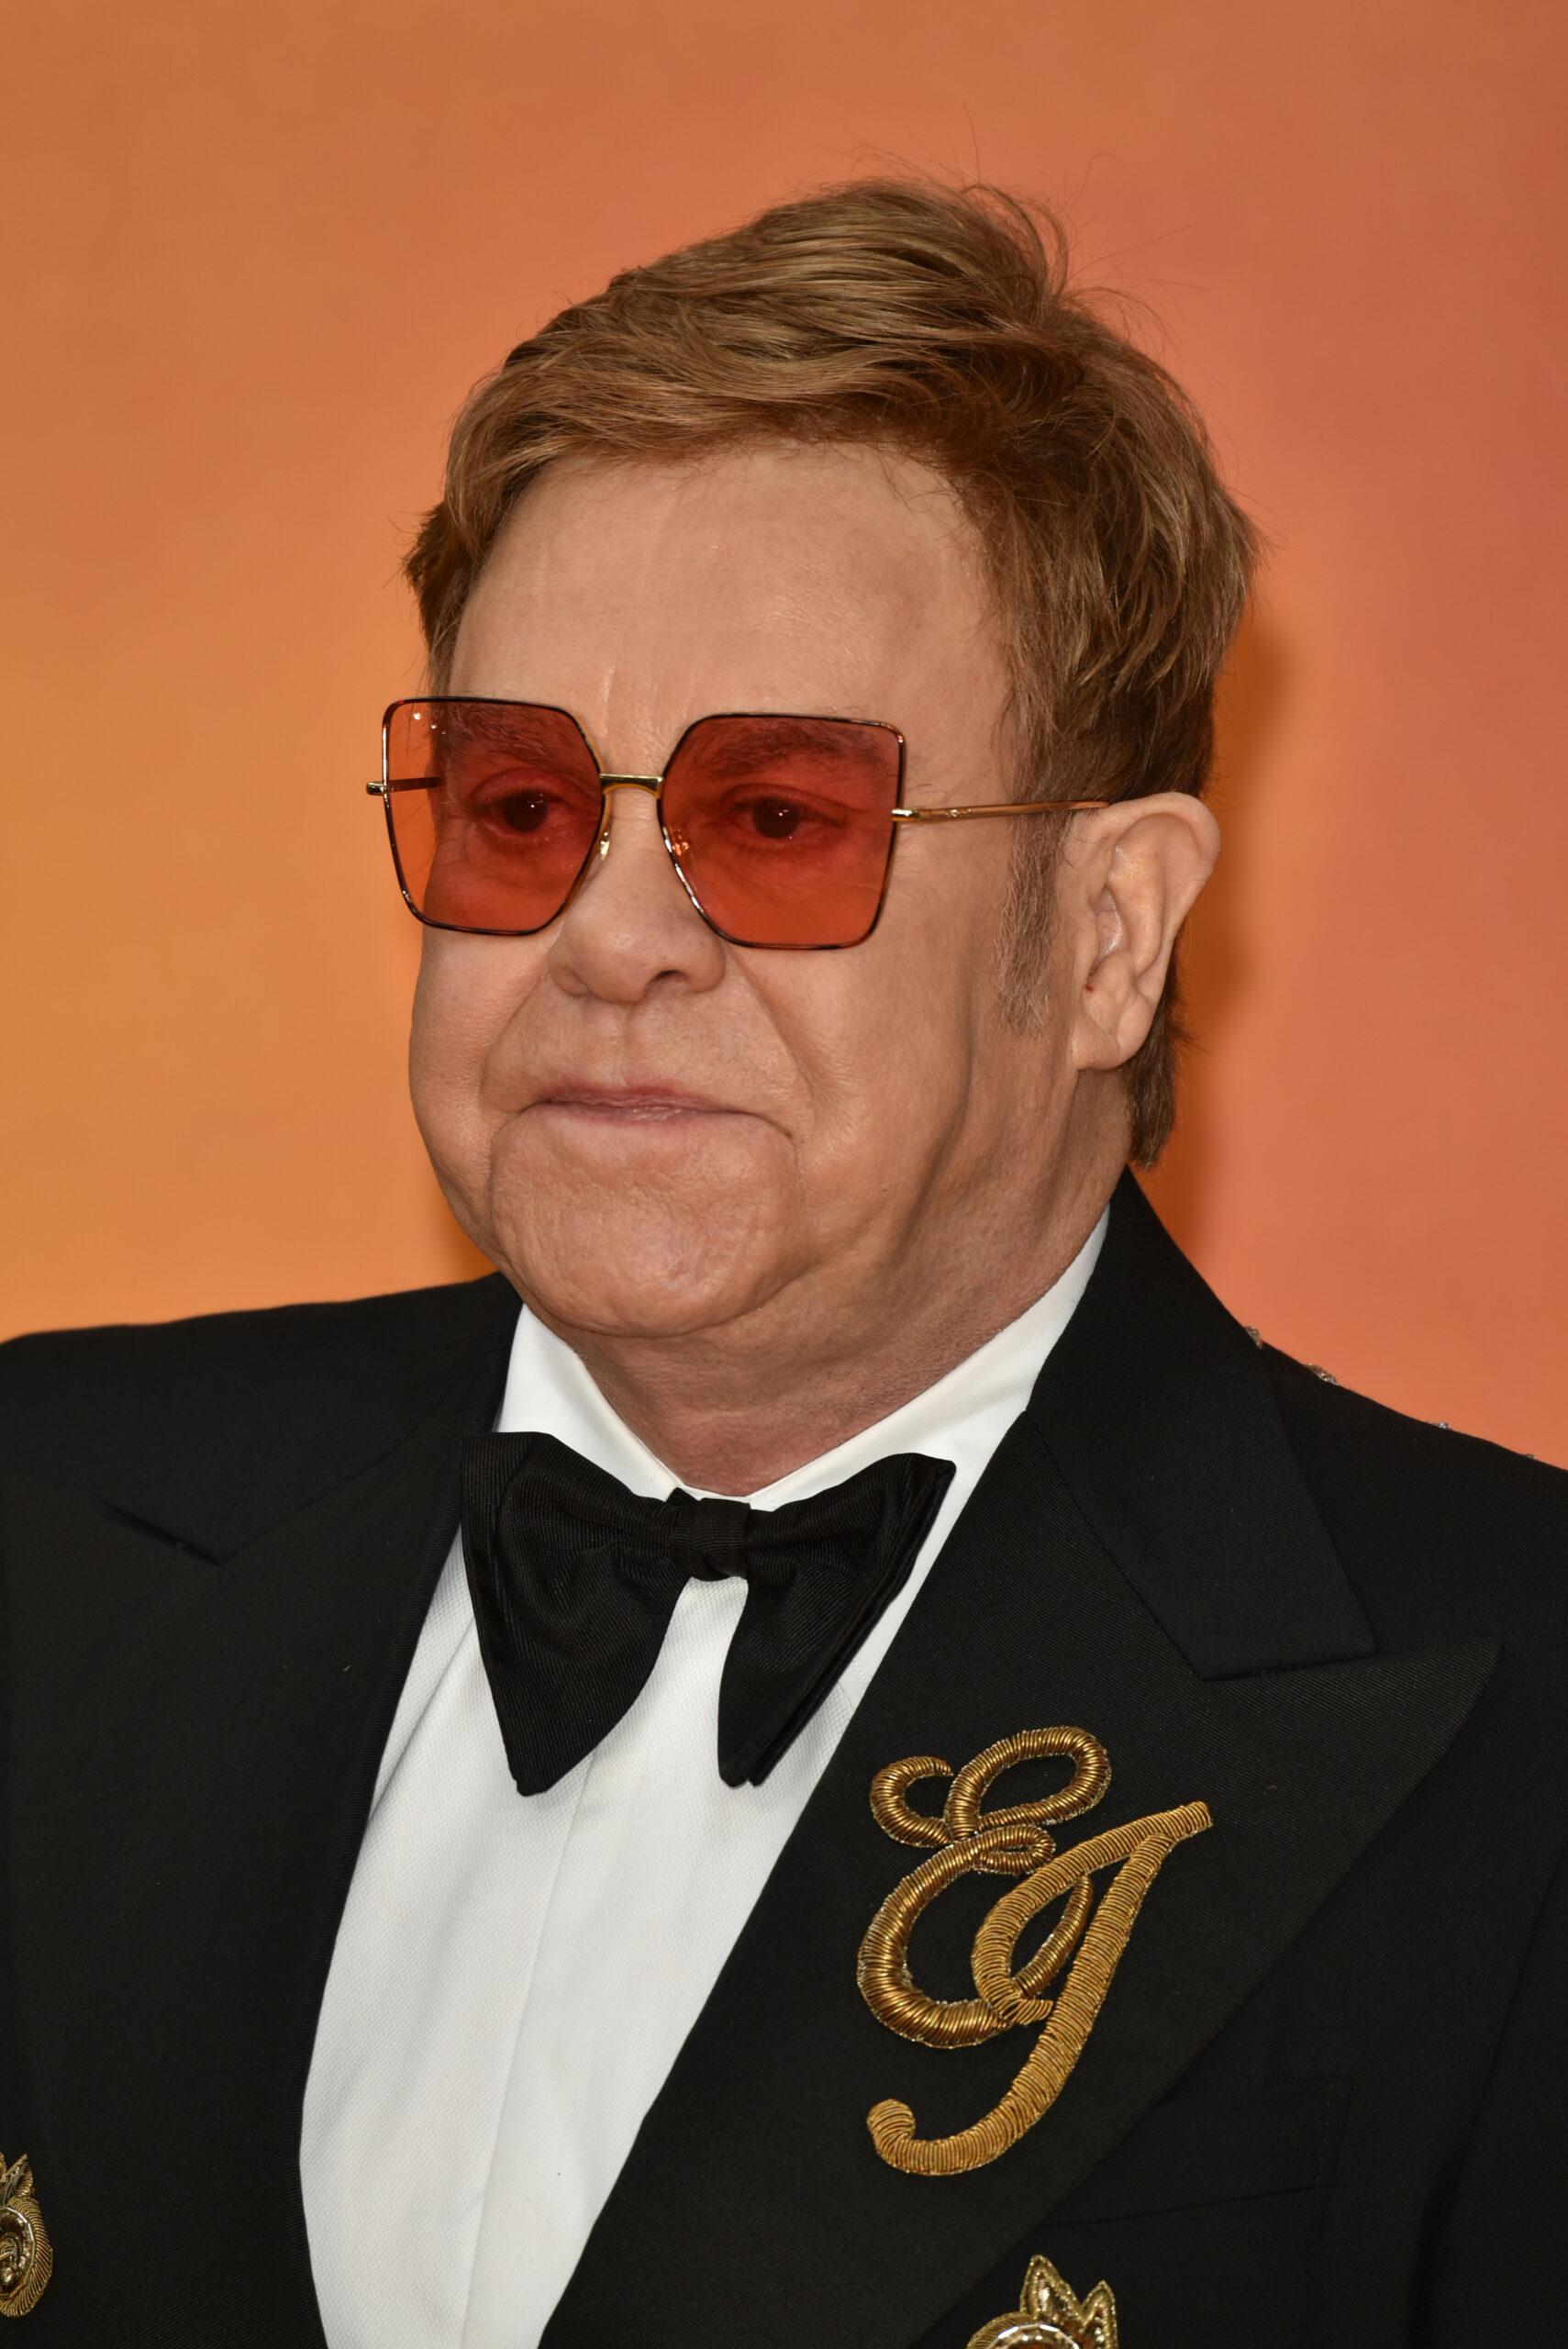 Elton John at "The Lion King" European film premiere